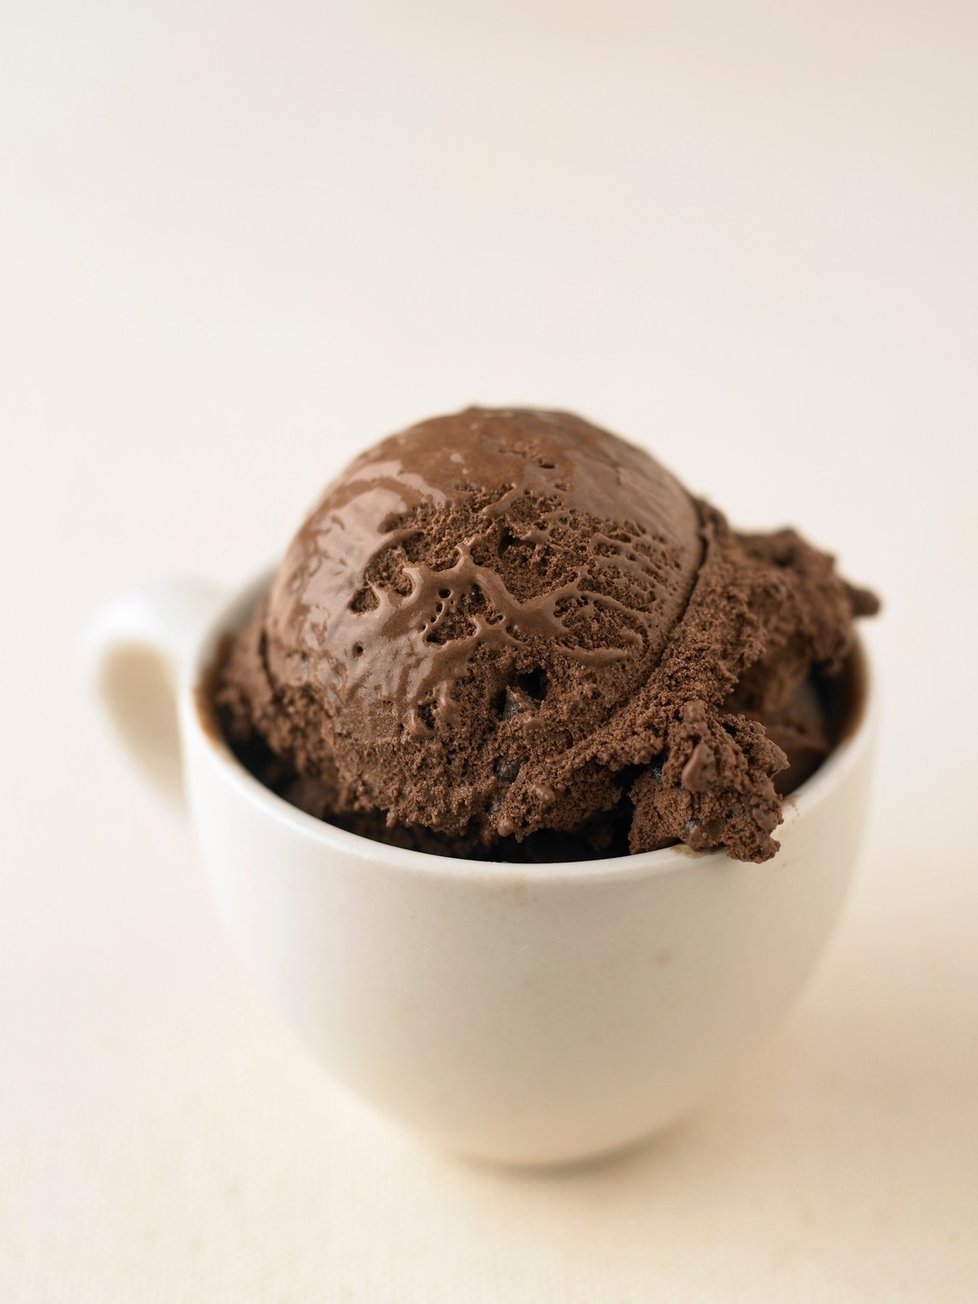 Čokoládová zmrzlina je druhým neoblíbenějším druhem zmrzliny v Česku i ve světě. Poráží ji jen vanilková.